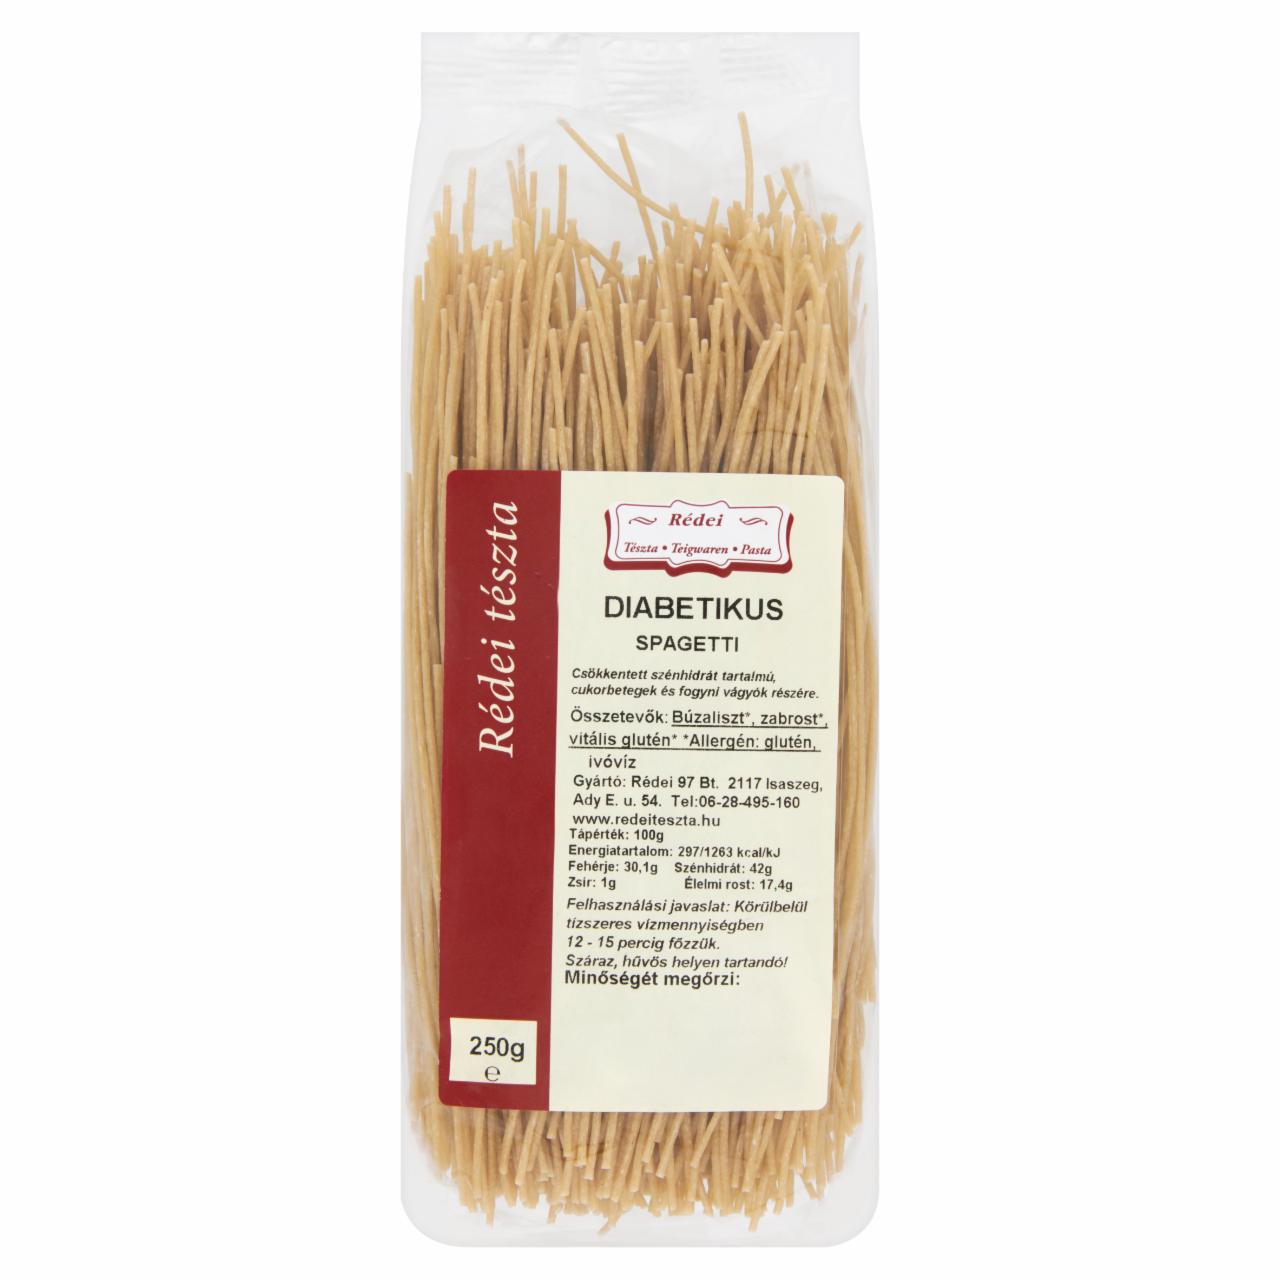 Képek - Rédei diabetikus spagetti tészta 250 g